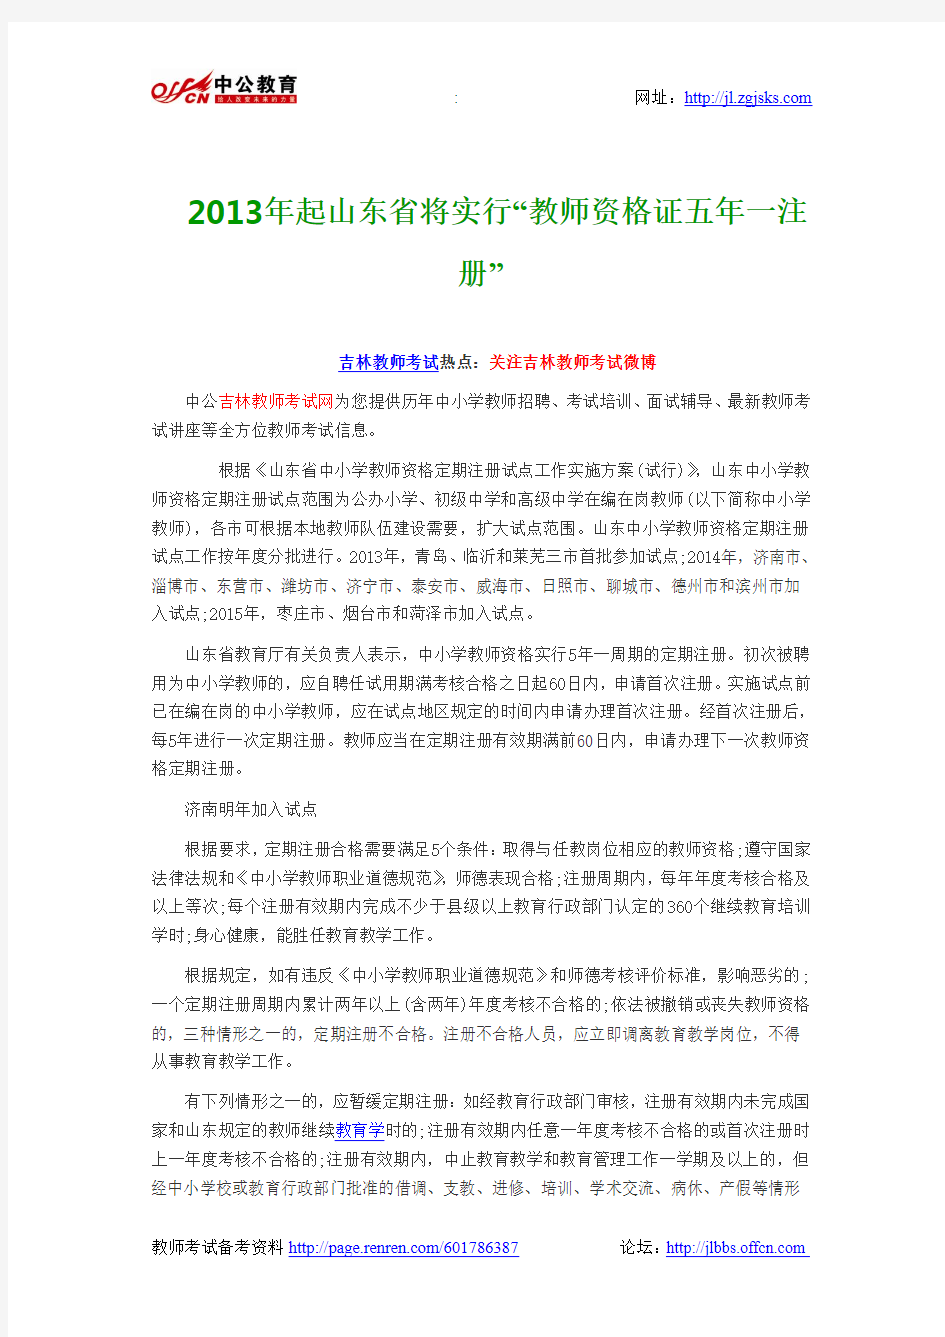 2013年起山东省将实行“教师资格证五年一注册”